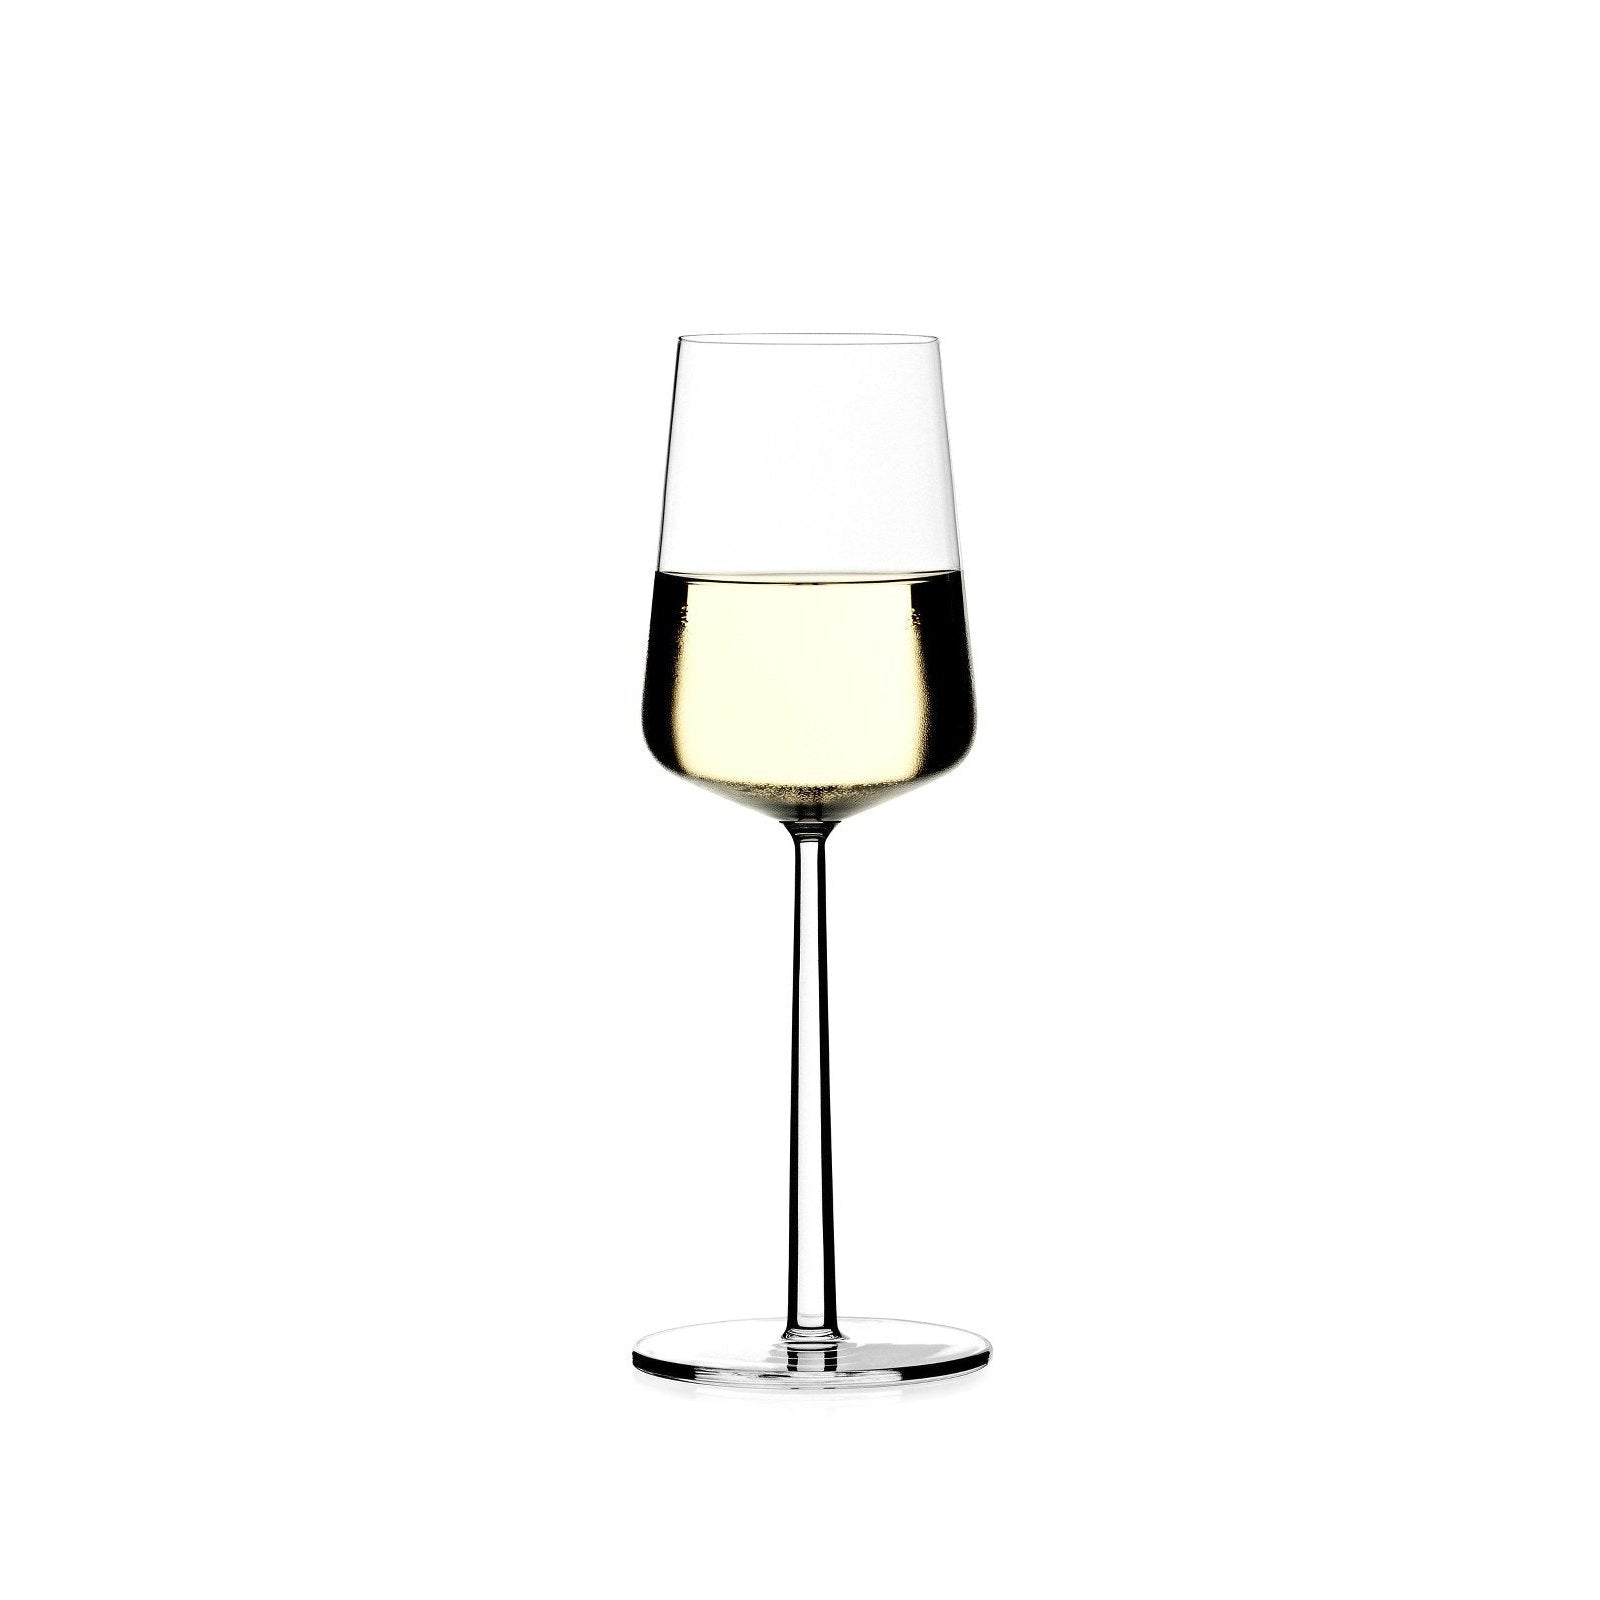 Iittala Essence Weißweinglas 2Stck, 33cl-Weißweinglas-Iittala-6411929504571-1008567-IIT-inwohn